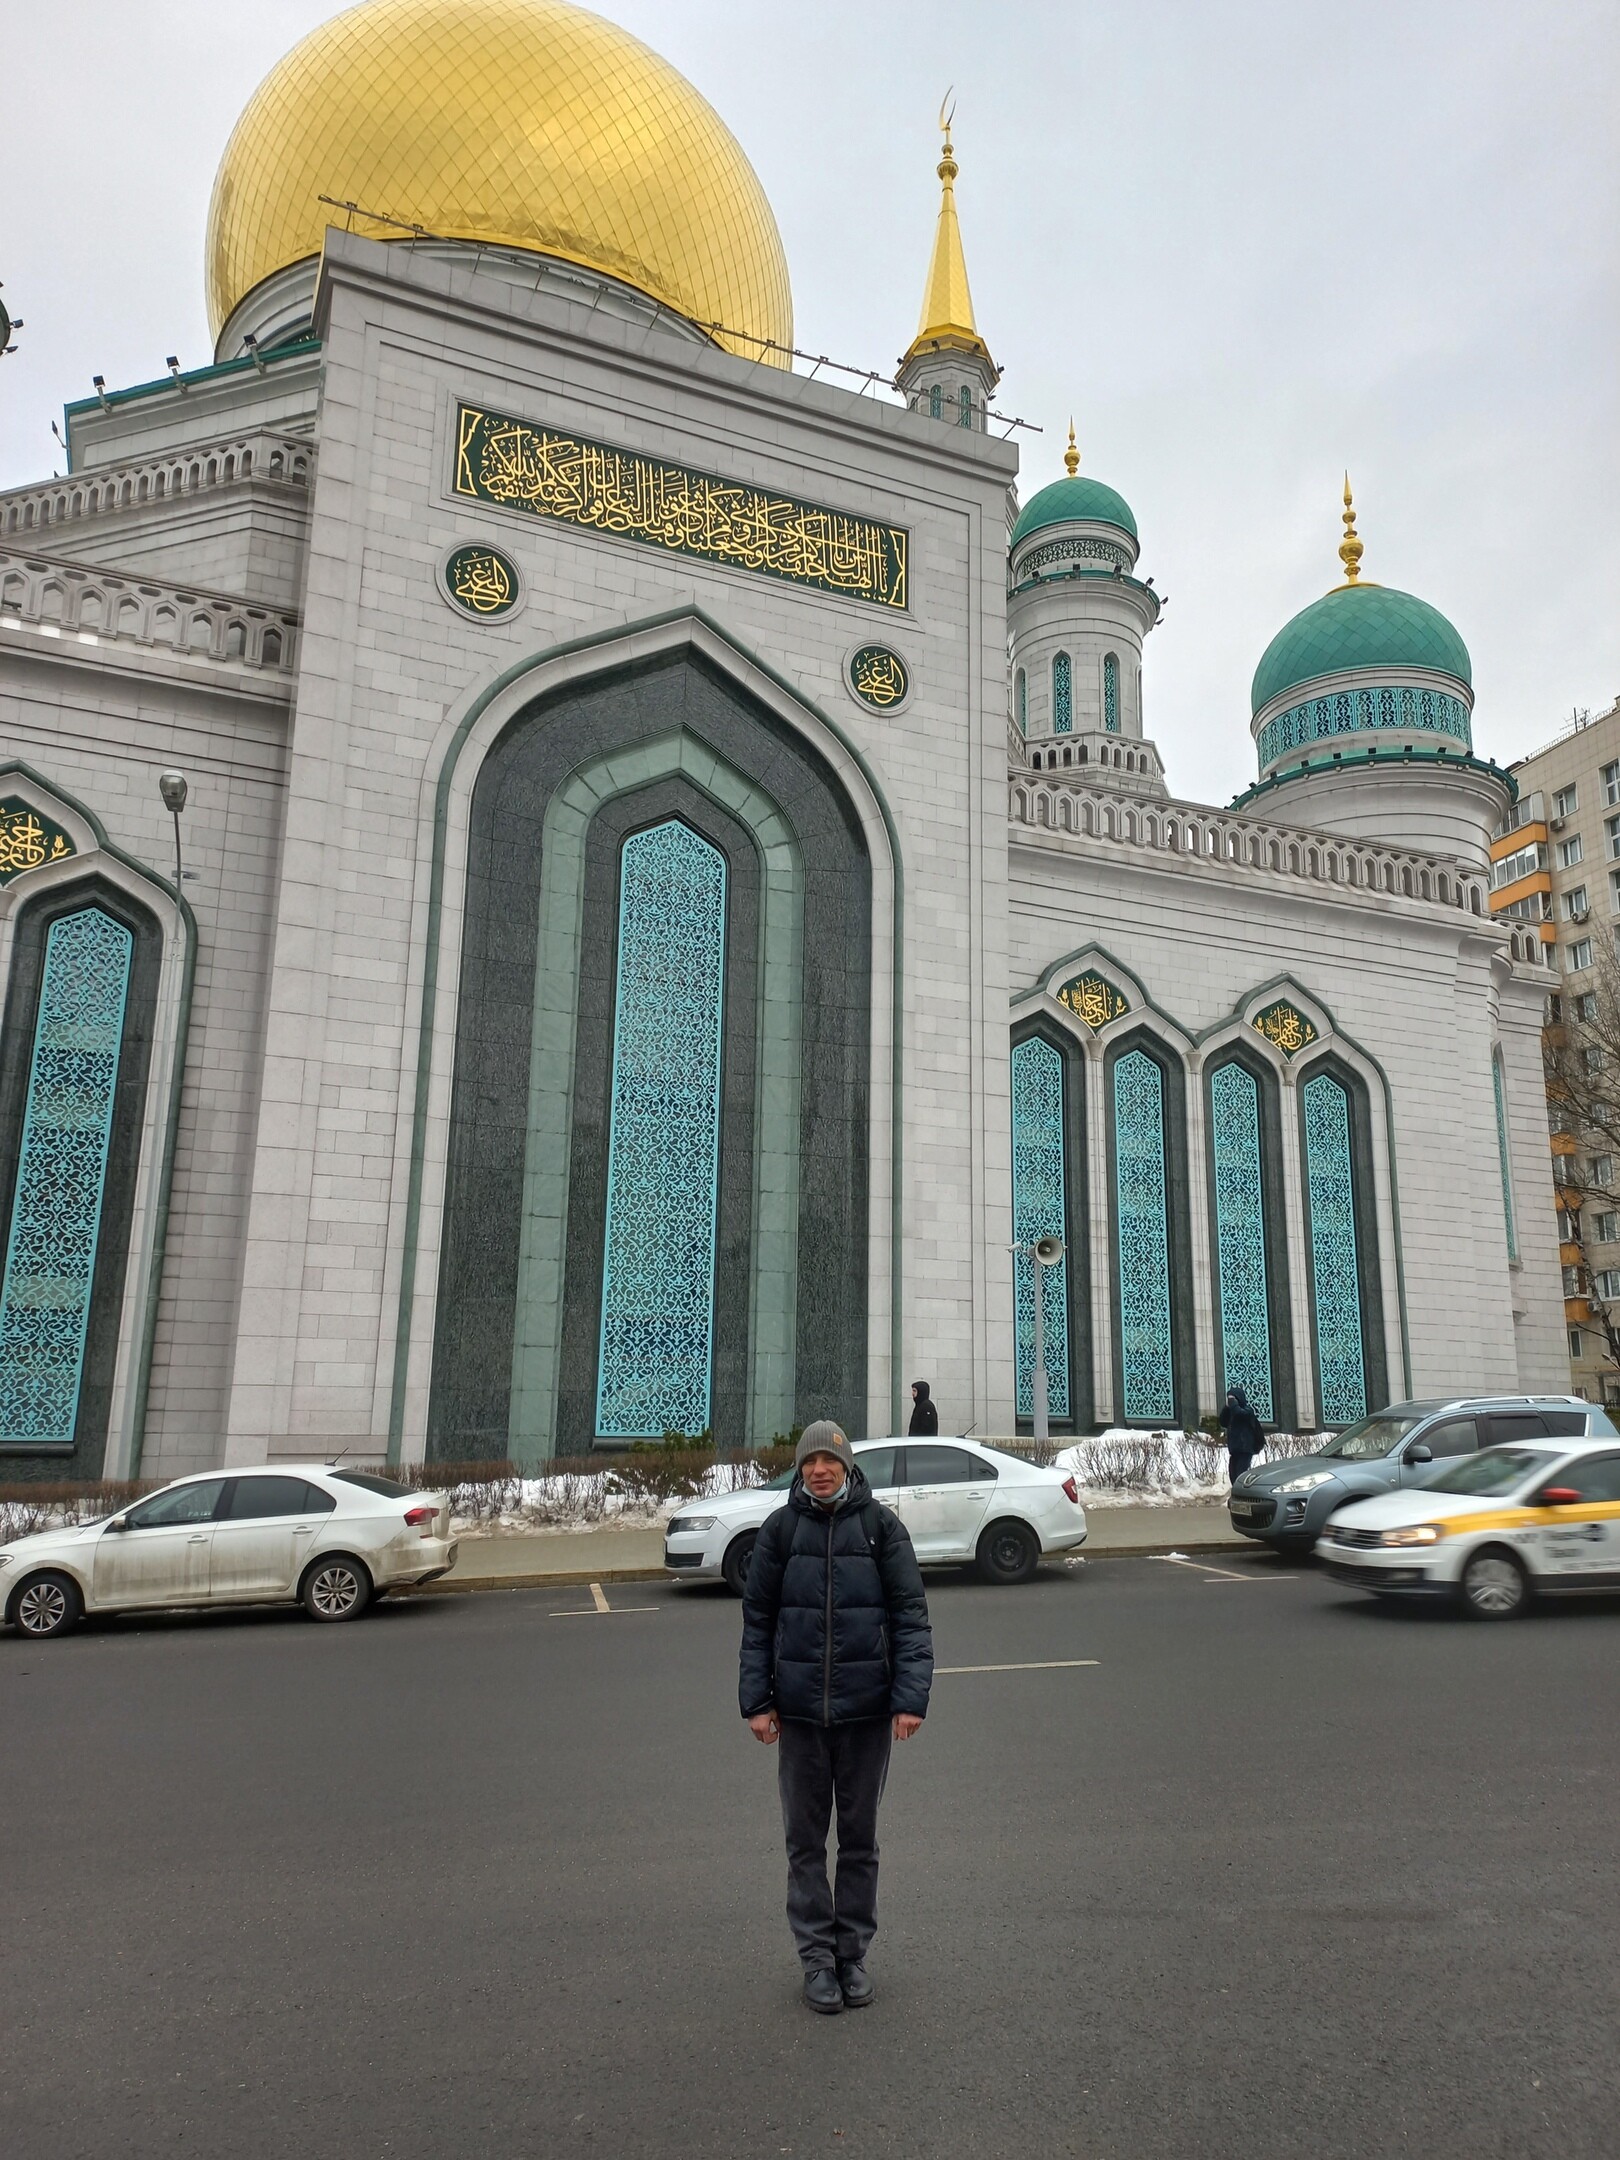 Said Mohammad berfoto di depan Masjid Agung Moskow.